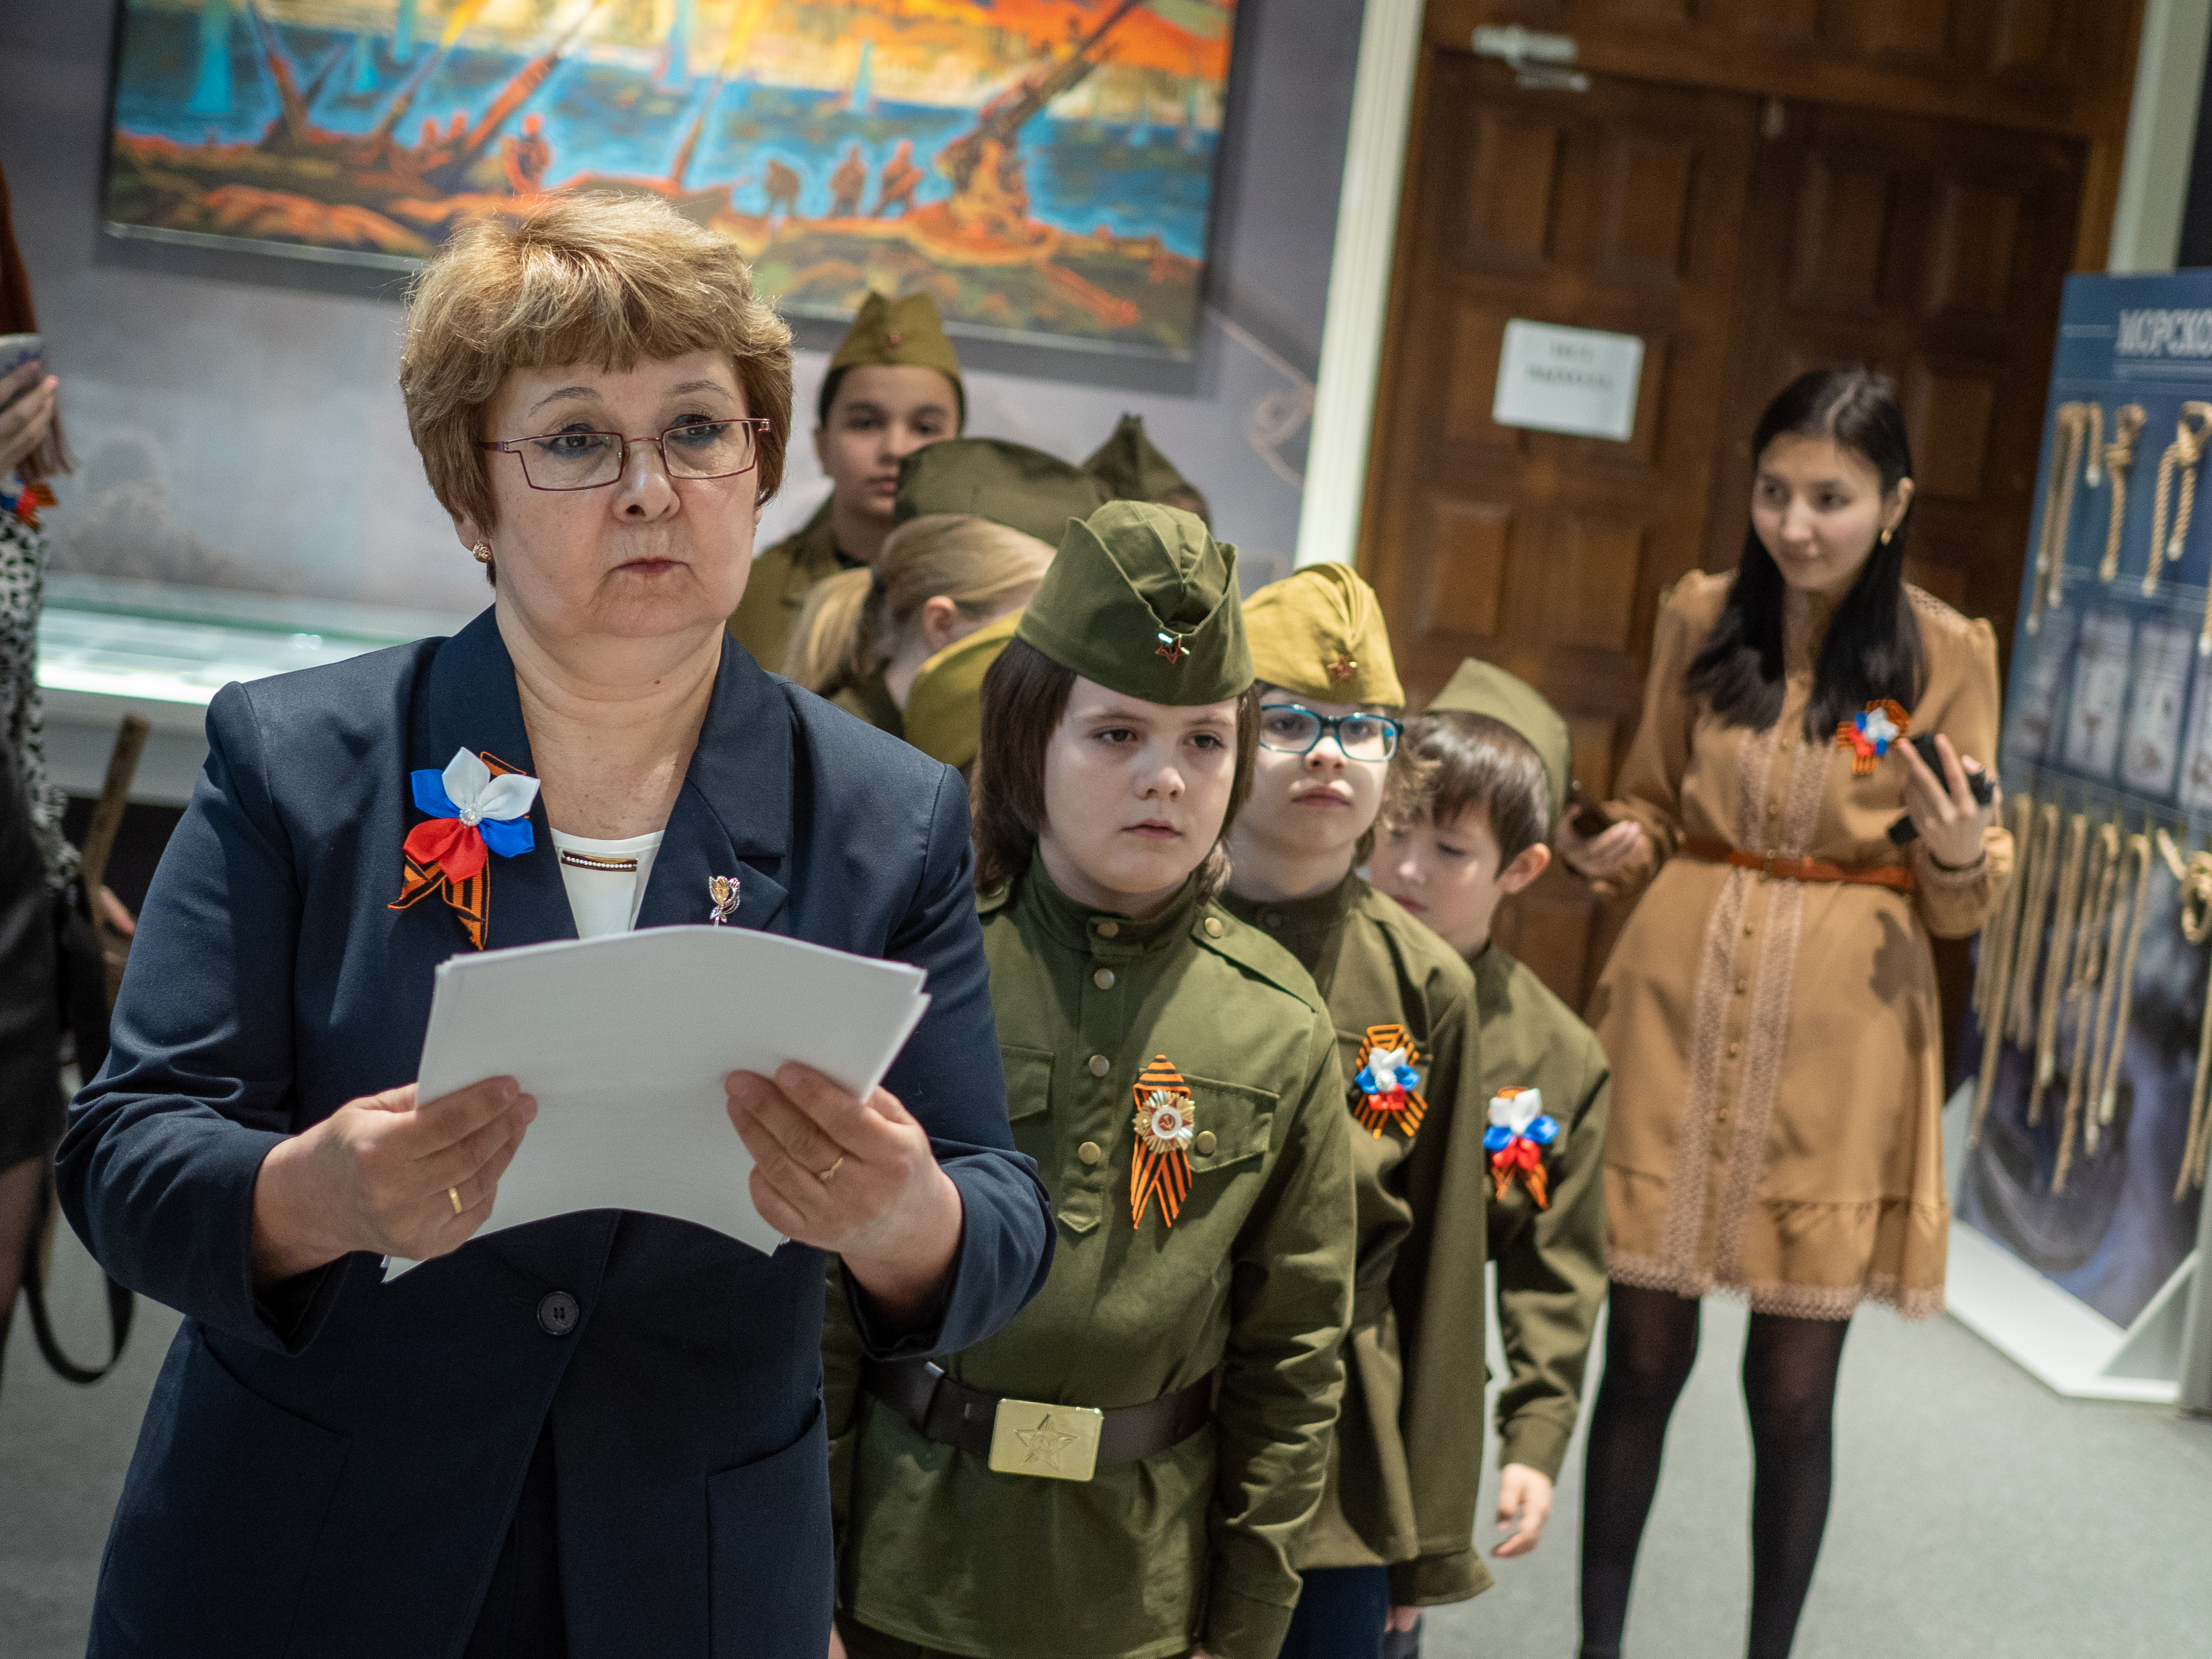 Юные герои 'Радуги' штурмуют Кремль